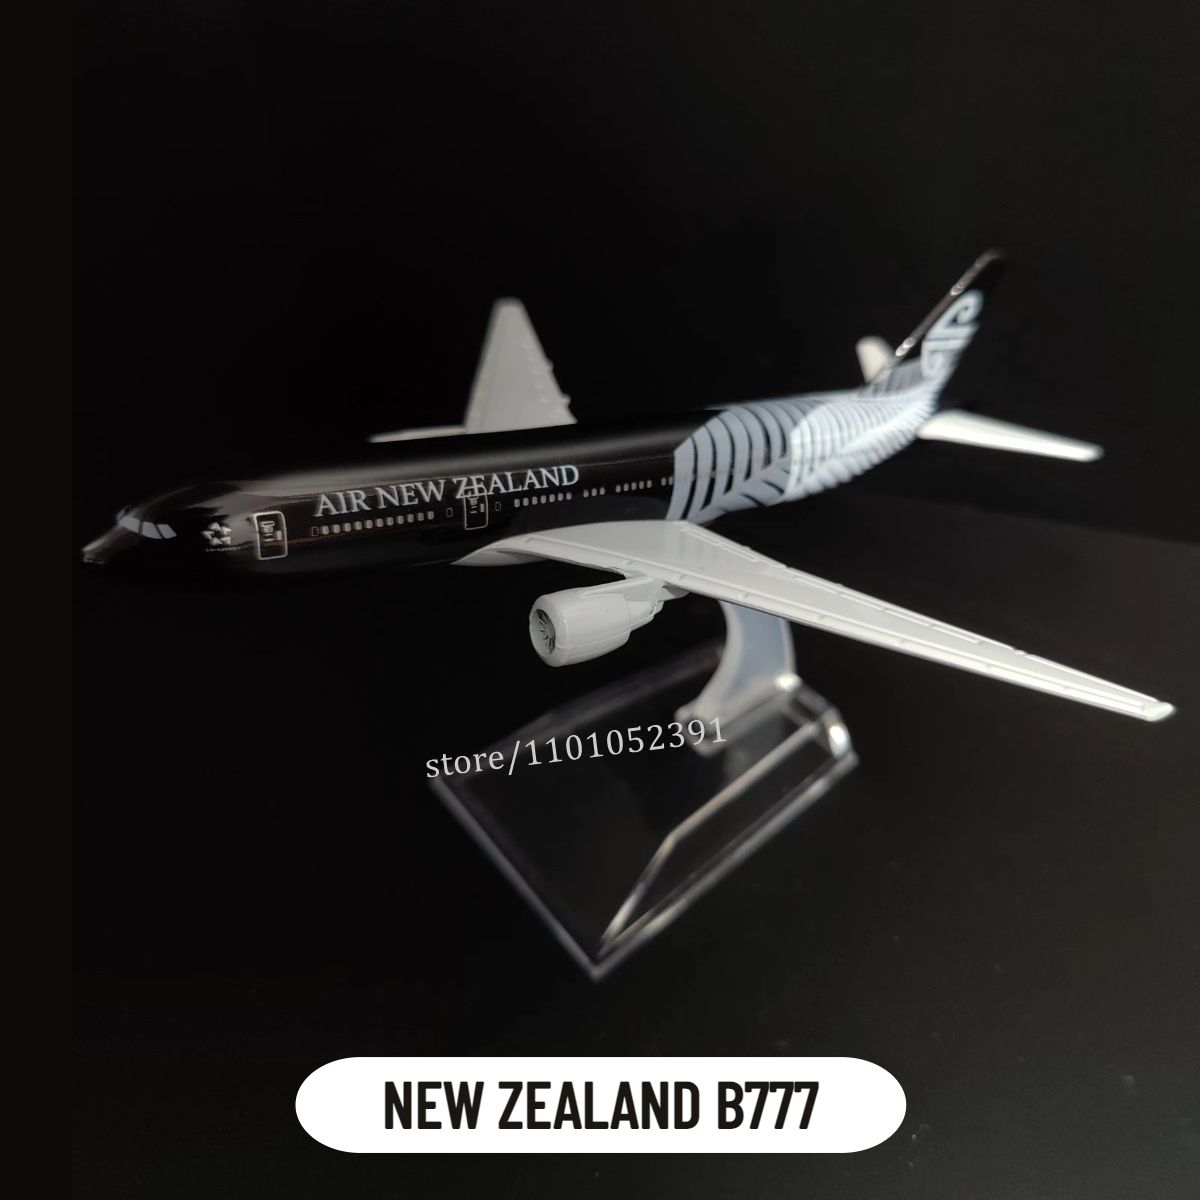 138. Nieuw Zeeland B777